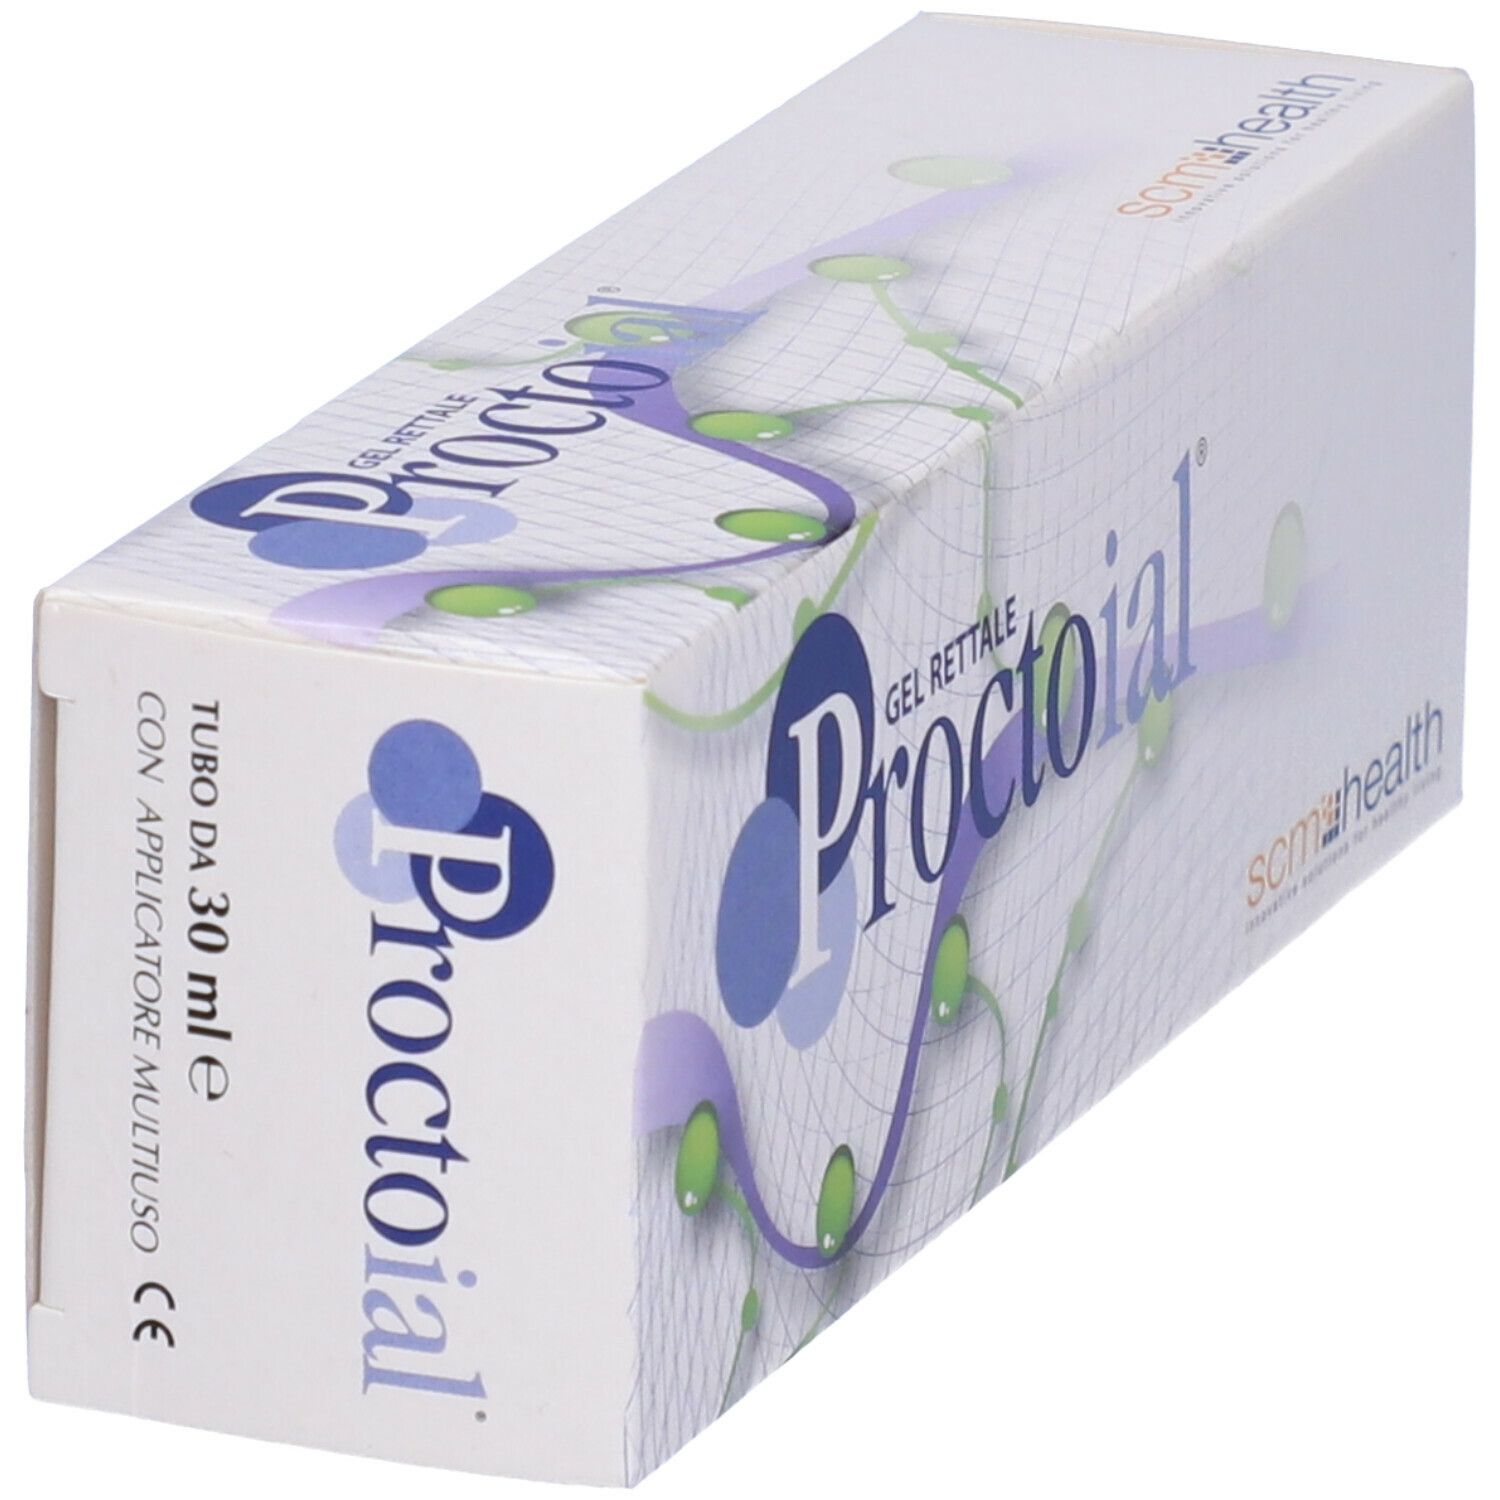 Proctoial® Gel Rettale